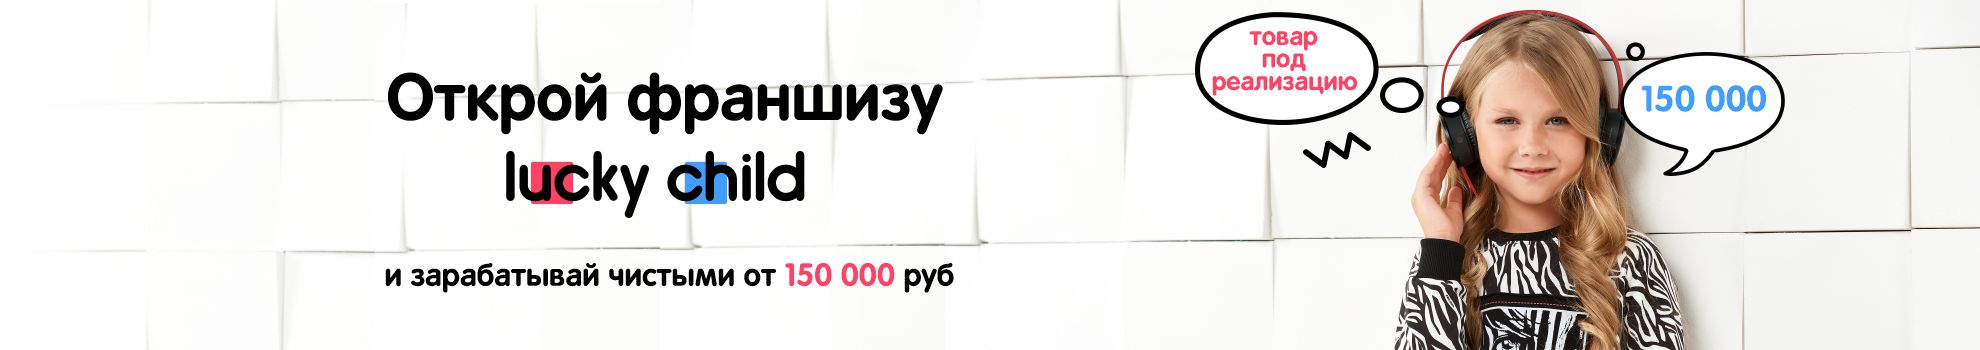 Открой франшизу Lucky Child и зарабатывай чистыми от 150 000 руб.